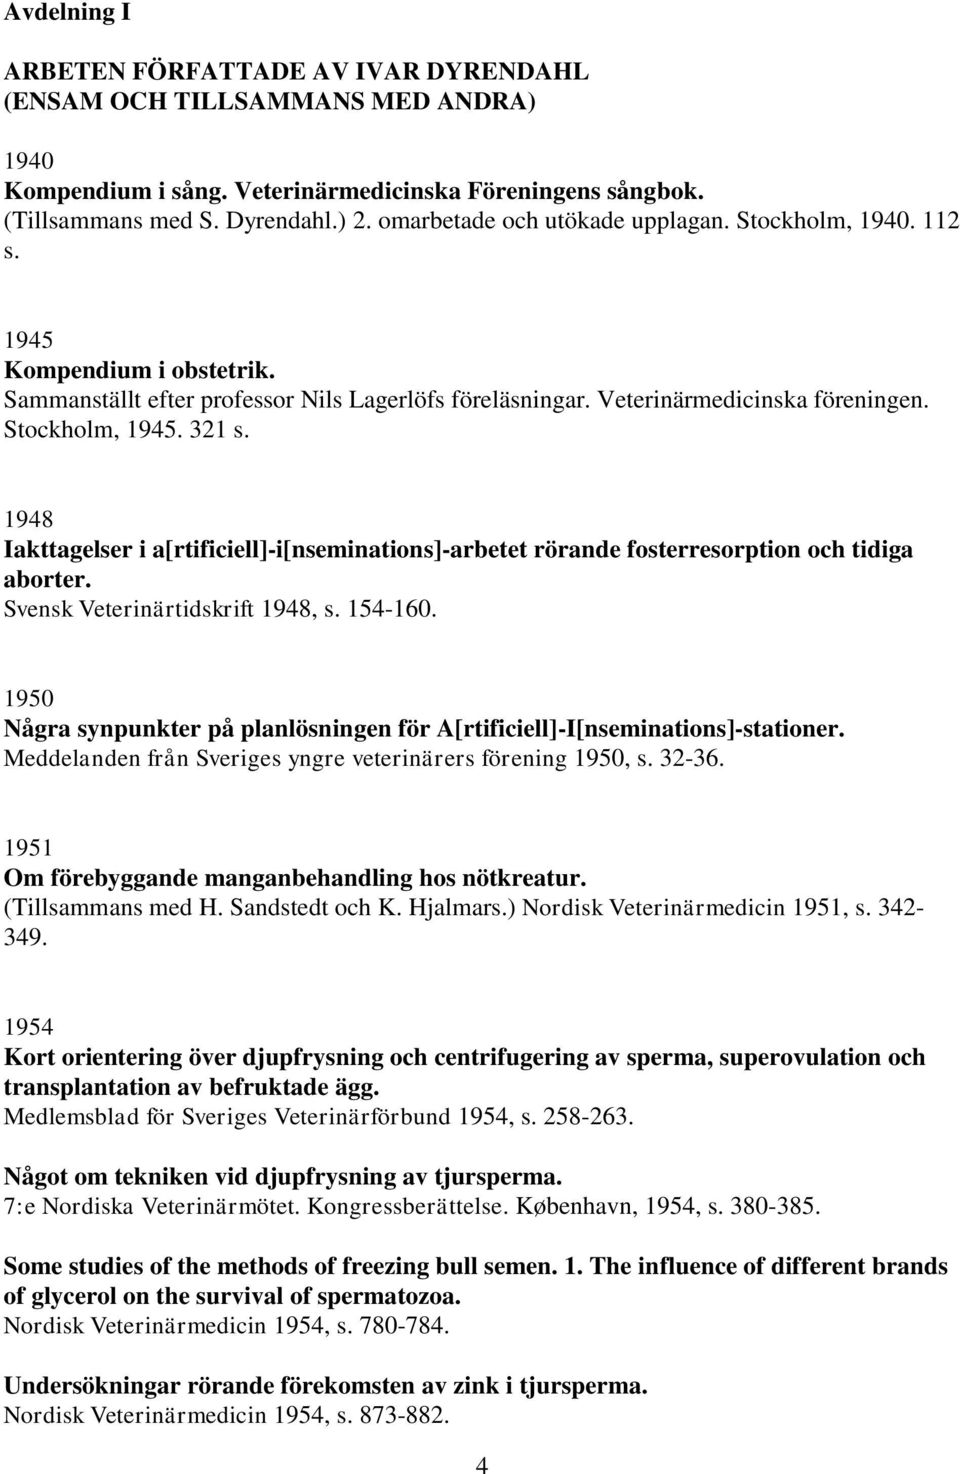 1948 Iakttagelser i a[rtificiell]-i[nseminations]-arbetet rörande fosterresorption och tidiga aborter. Svensk Veterinärtidskrift 1948, s. 154-160.